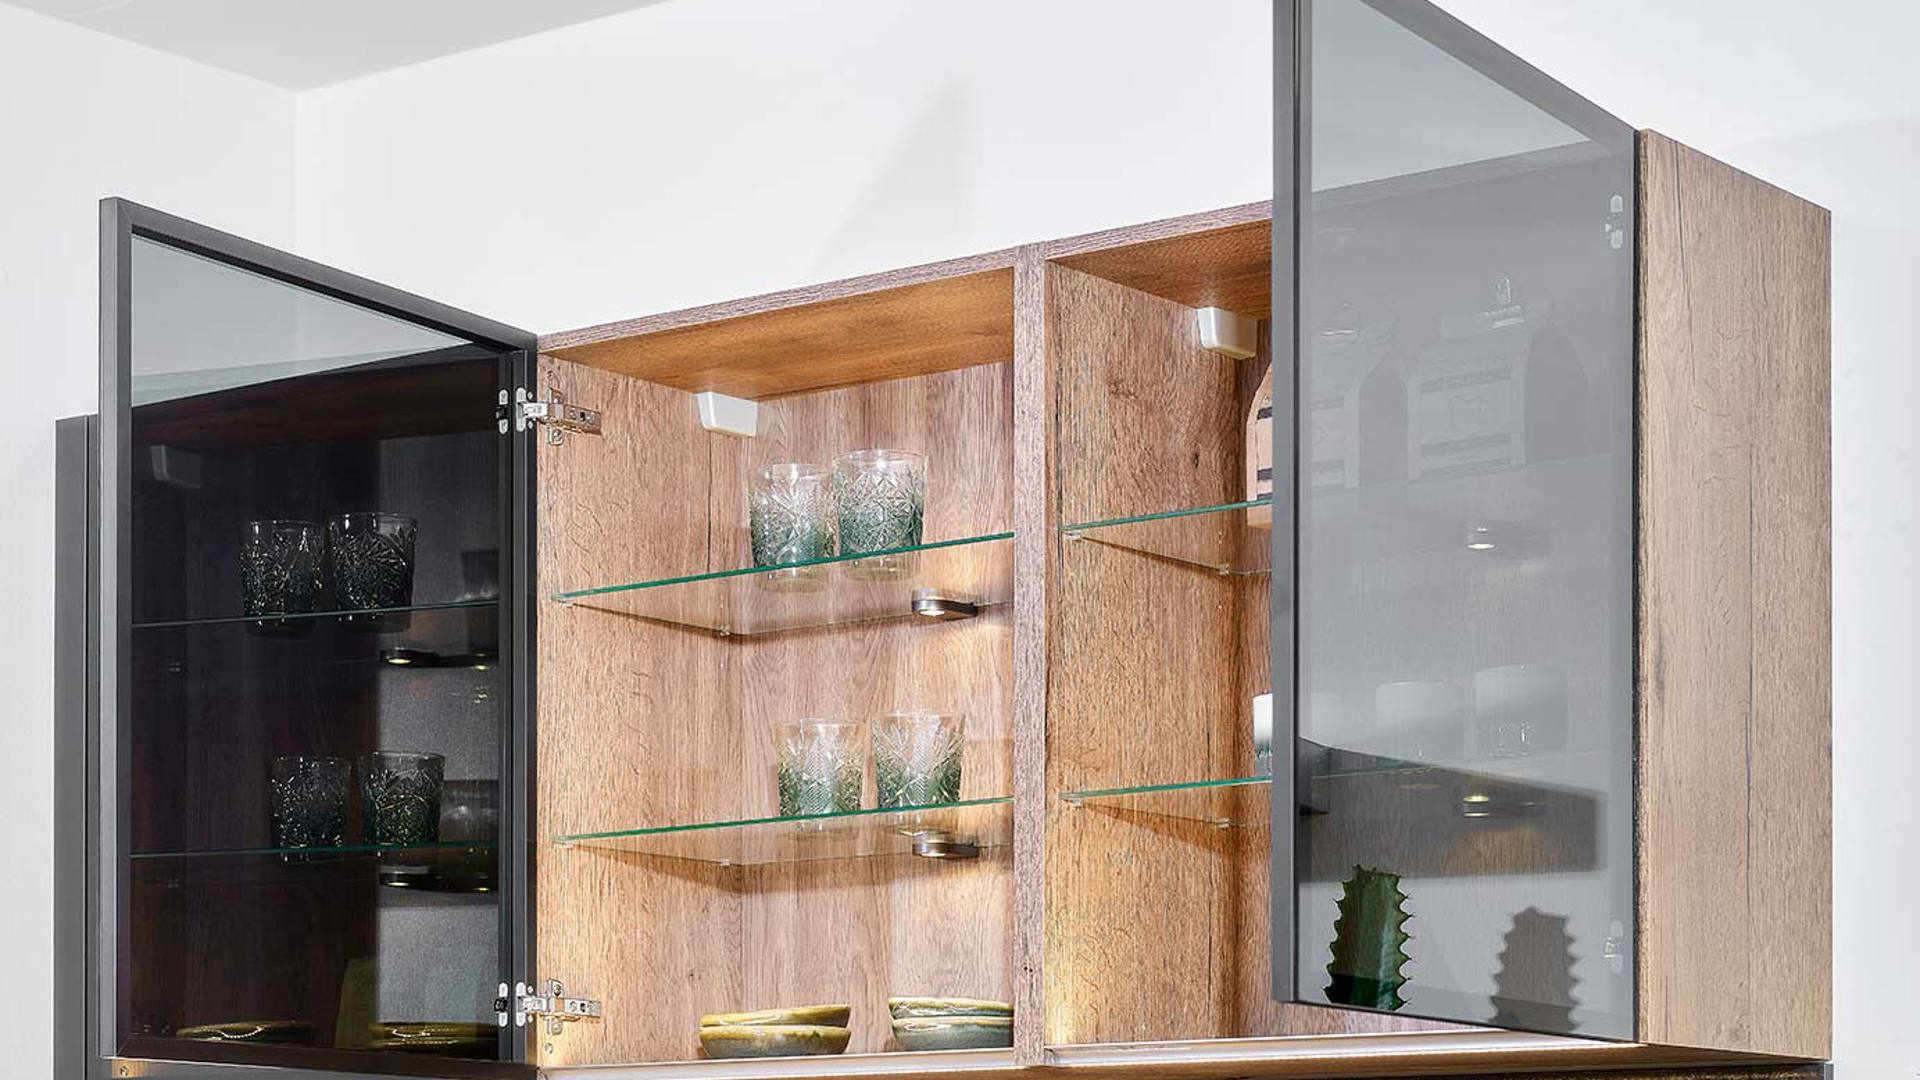  Moderne houten keuken, bovenkasten glas